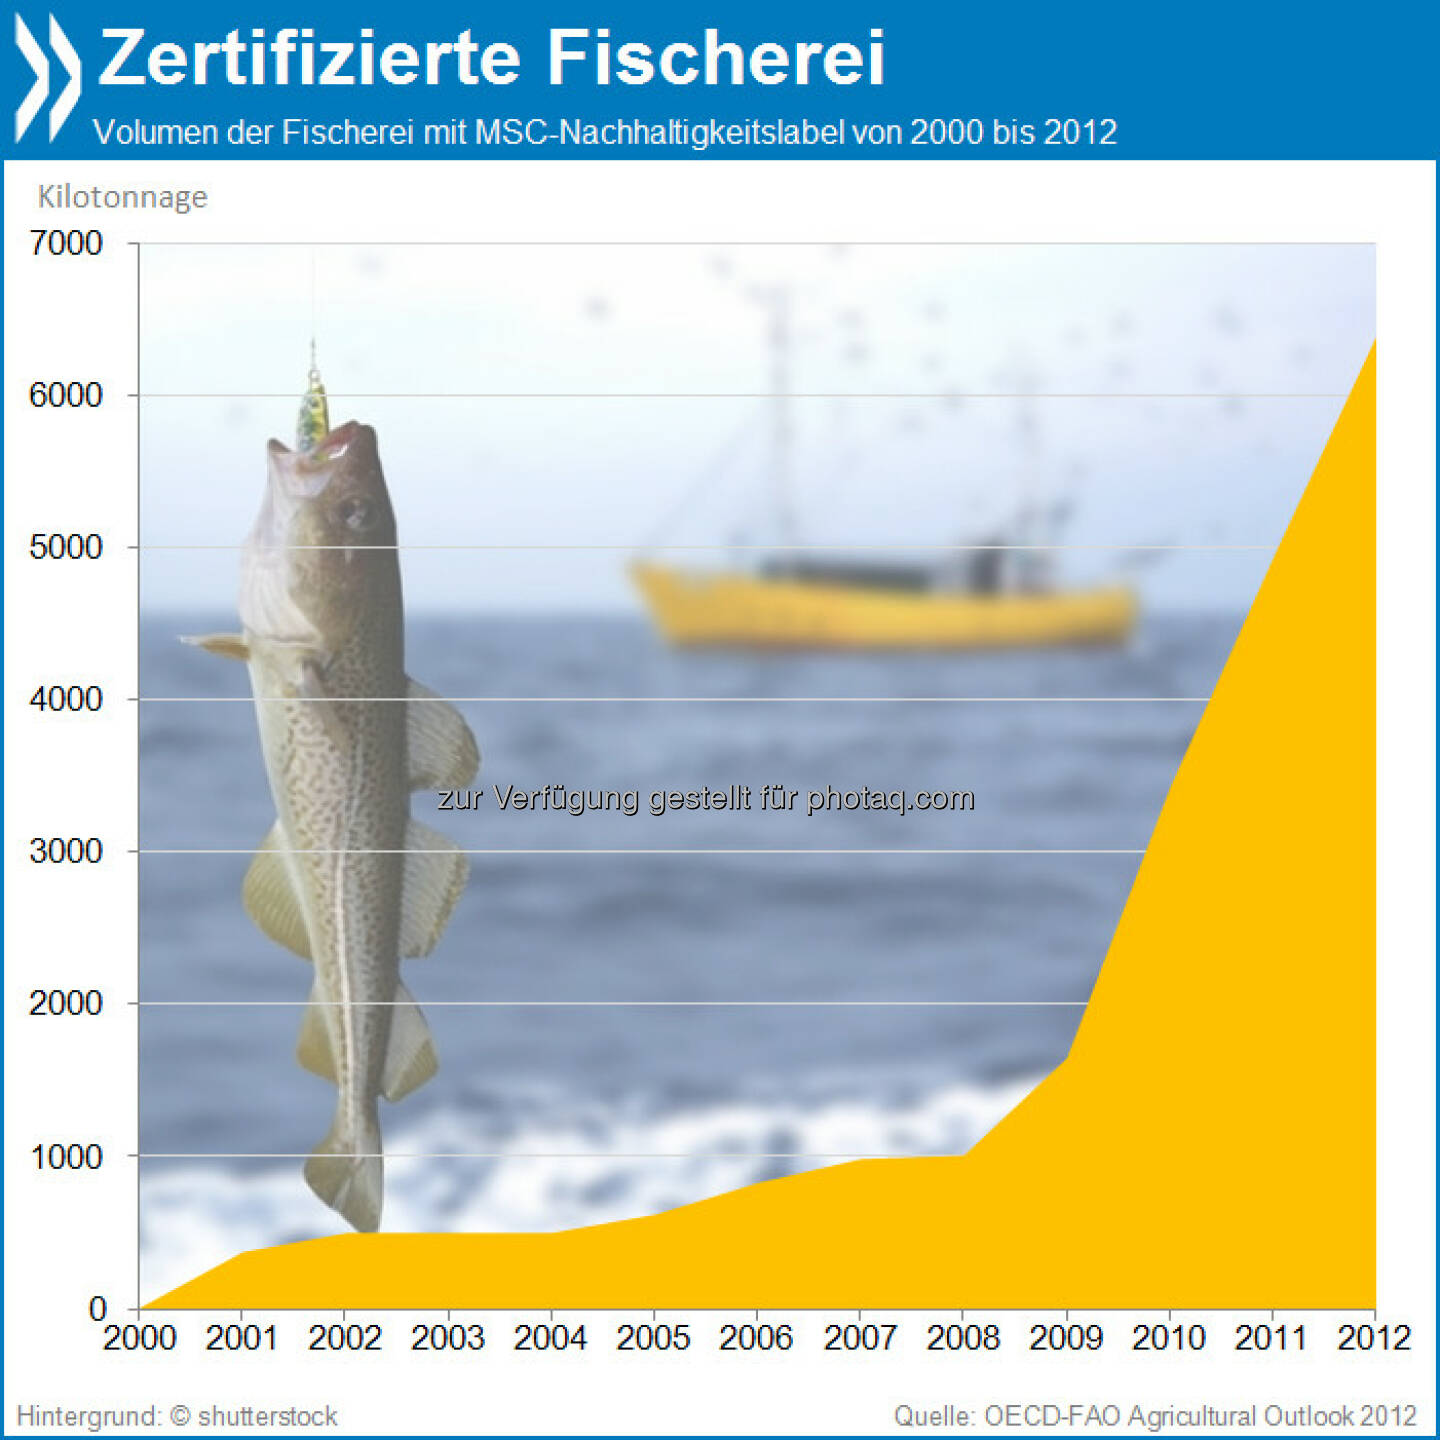 Fisch en Vogue: Seit 2008 steigt die Zahl der Fischprodukte mit Nachhaltigkeitslabel kontinuierlich an. Insgesamt wuchs das nachhaltige Fisch-Volumen zwischen den Jahren 2008 und 2012 von gut 1000 auf über 6000 Kilotonnagen.

Mehr unter http://bit.ly/1ag1U0S (OECD-FAO Agricultural Outlook 2012, S.182)